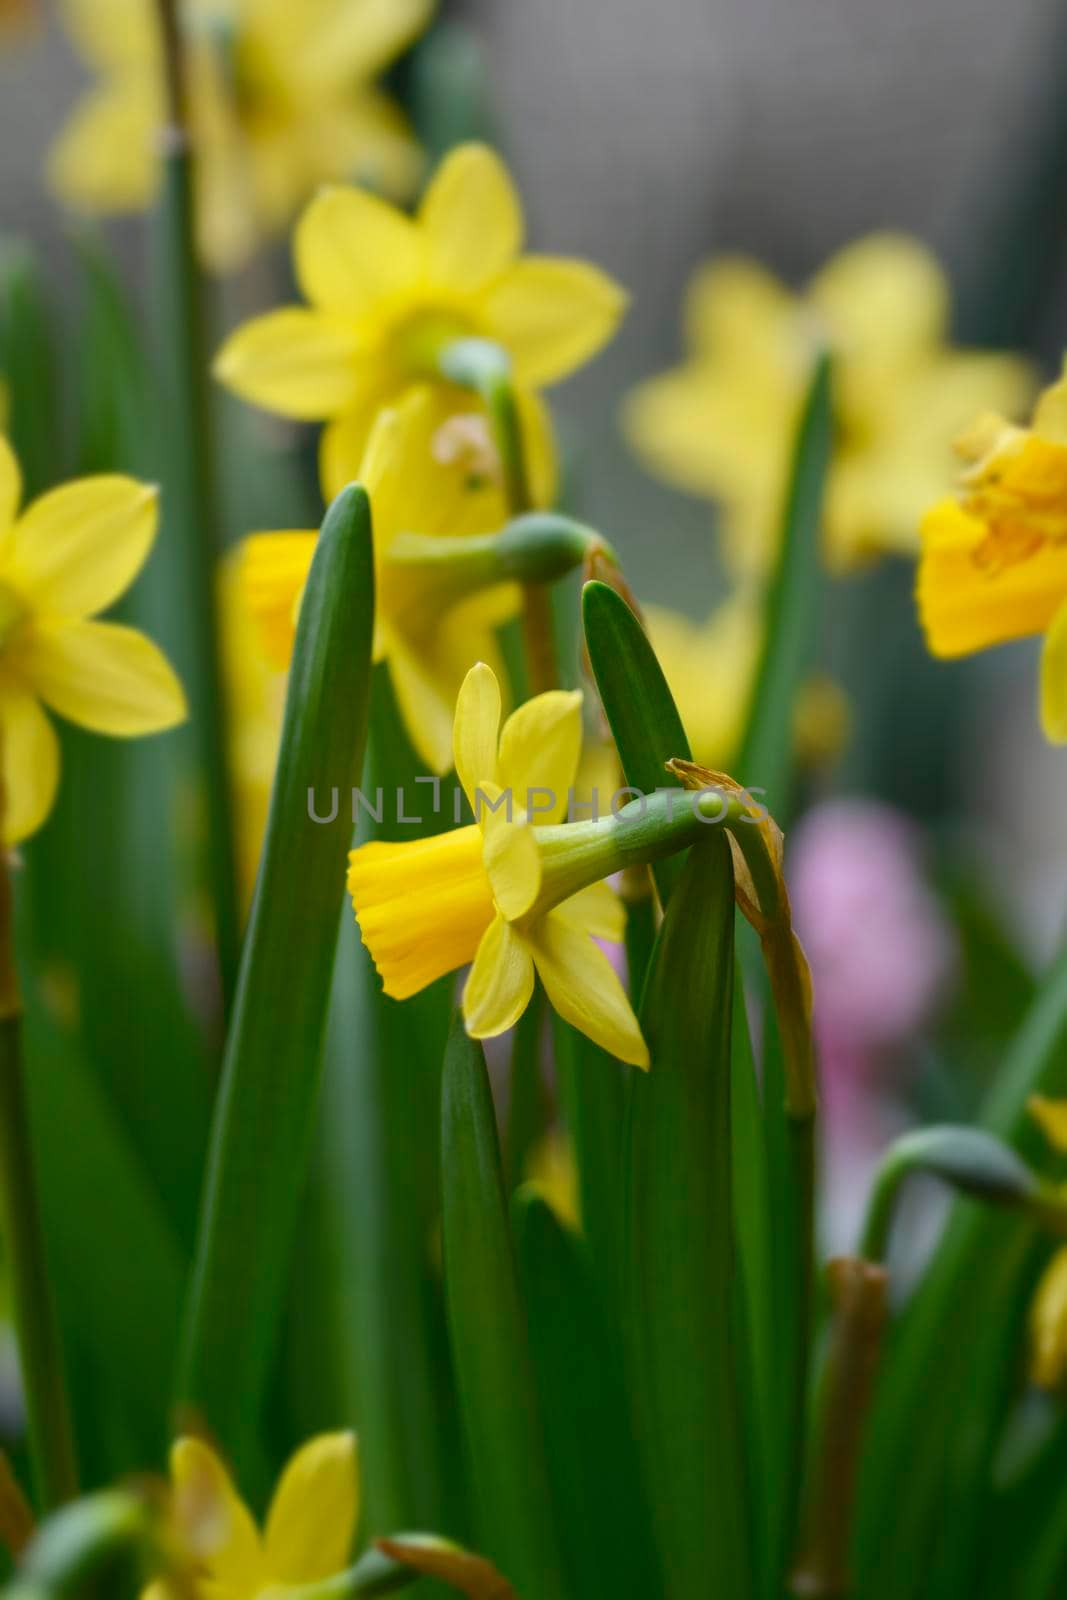 Daffodil Tete a Tete - Latin name - Narcissus cyclamineus Tete a Tete